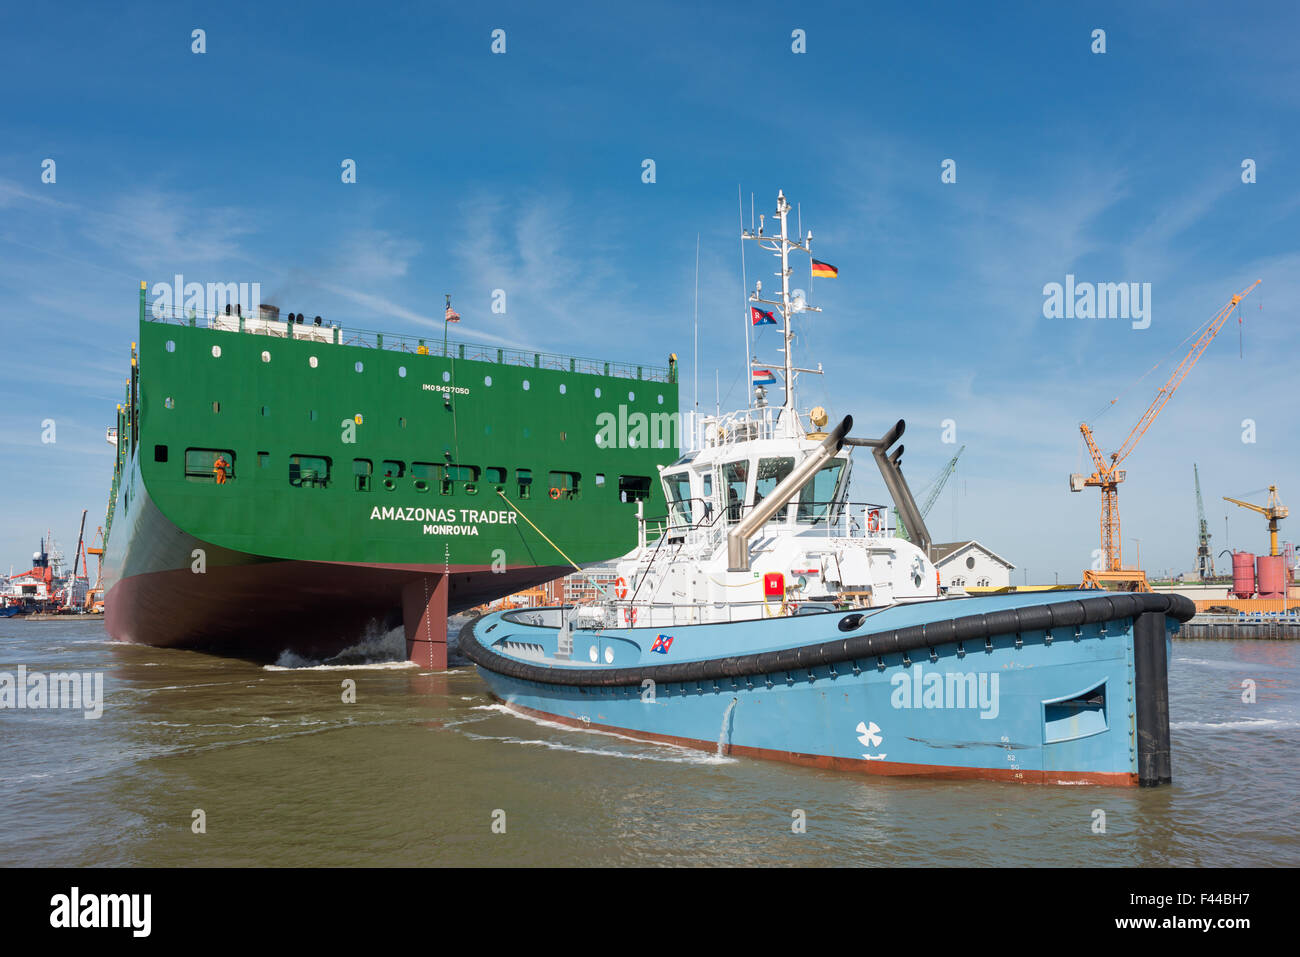 Vessel Amazonas Trader Stock Photo